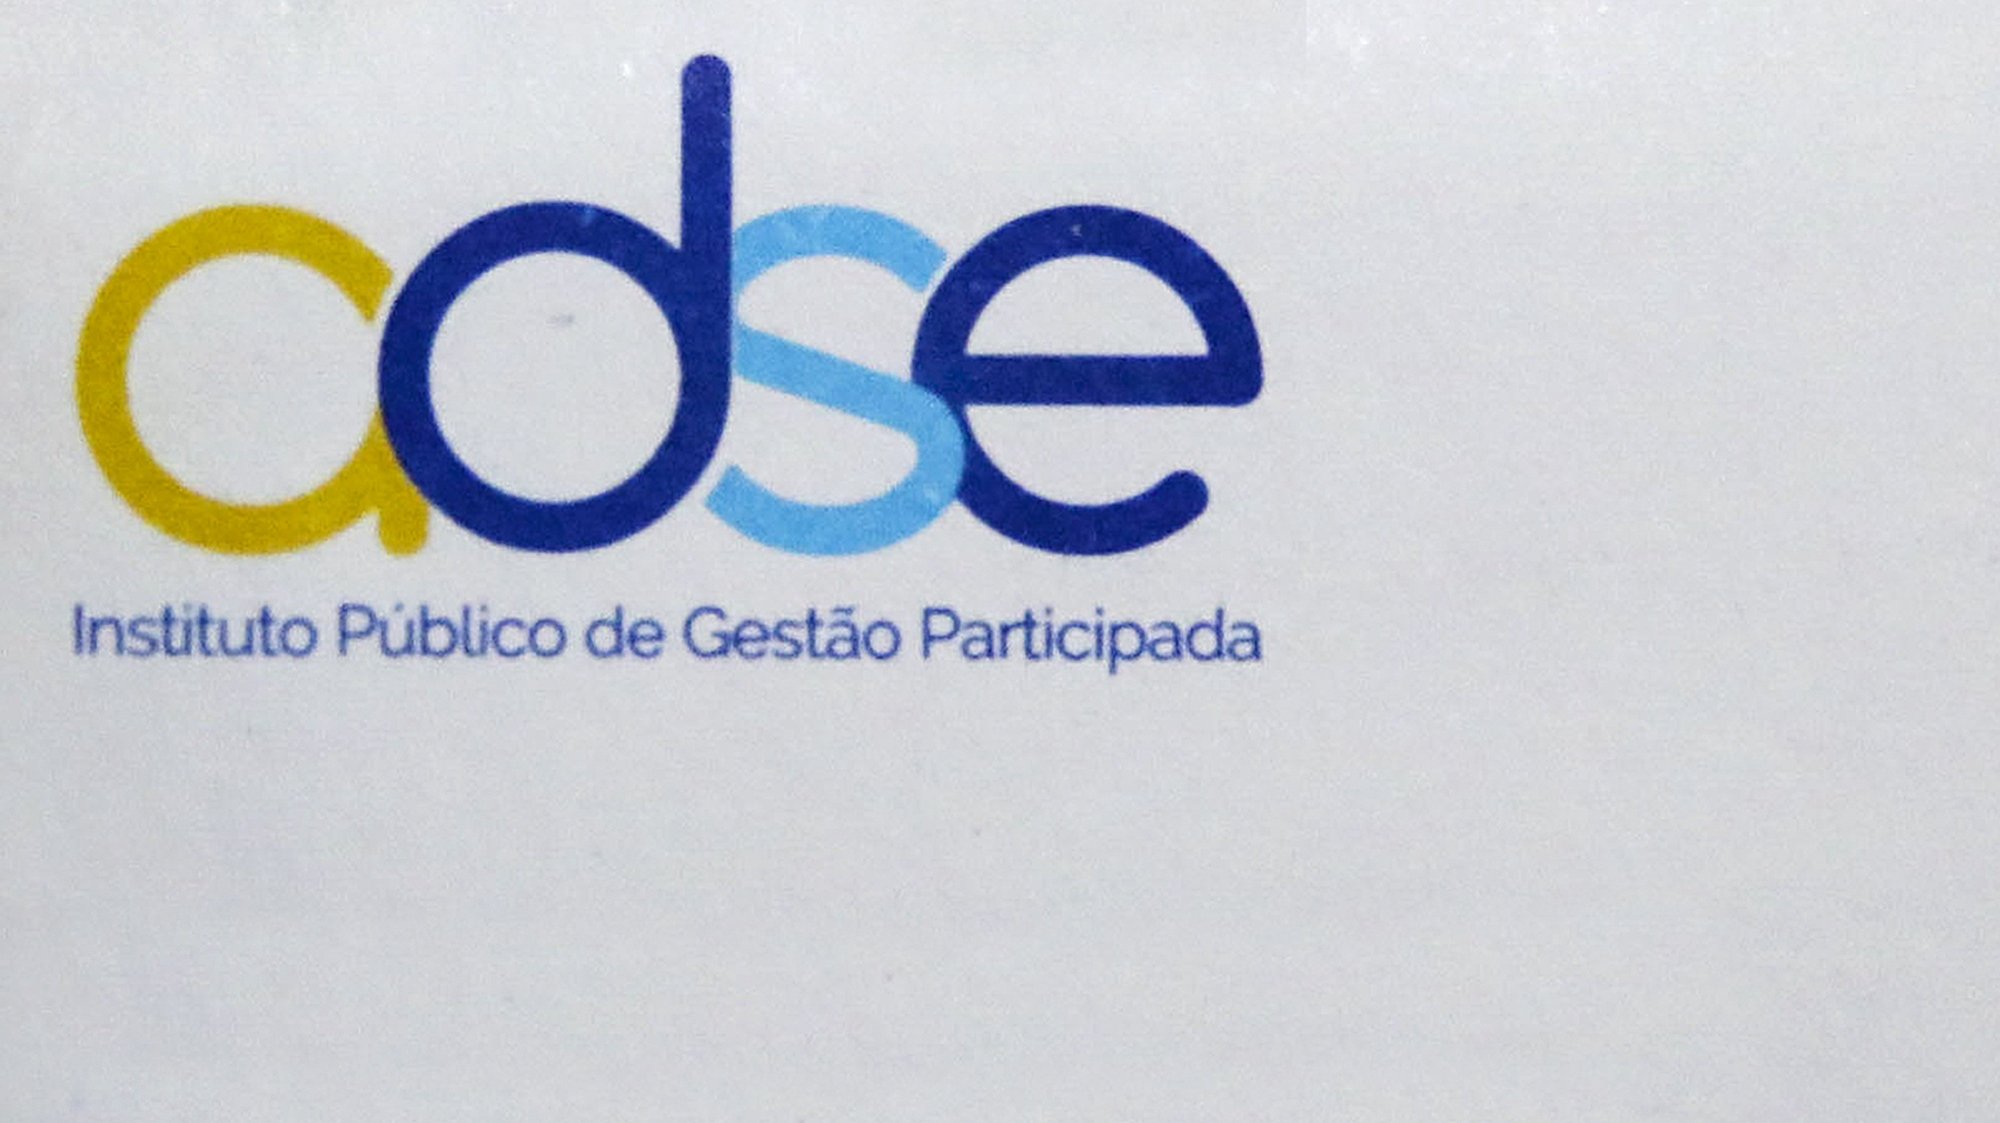 ADSE, Instituto Publico de Gestão Participada, 12 fevereiro 2019. LUSA